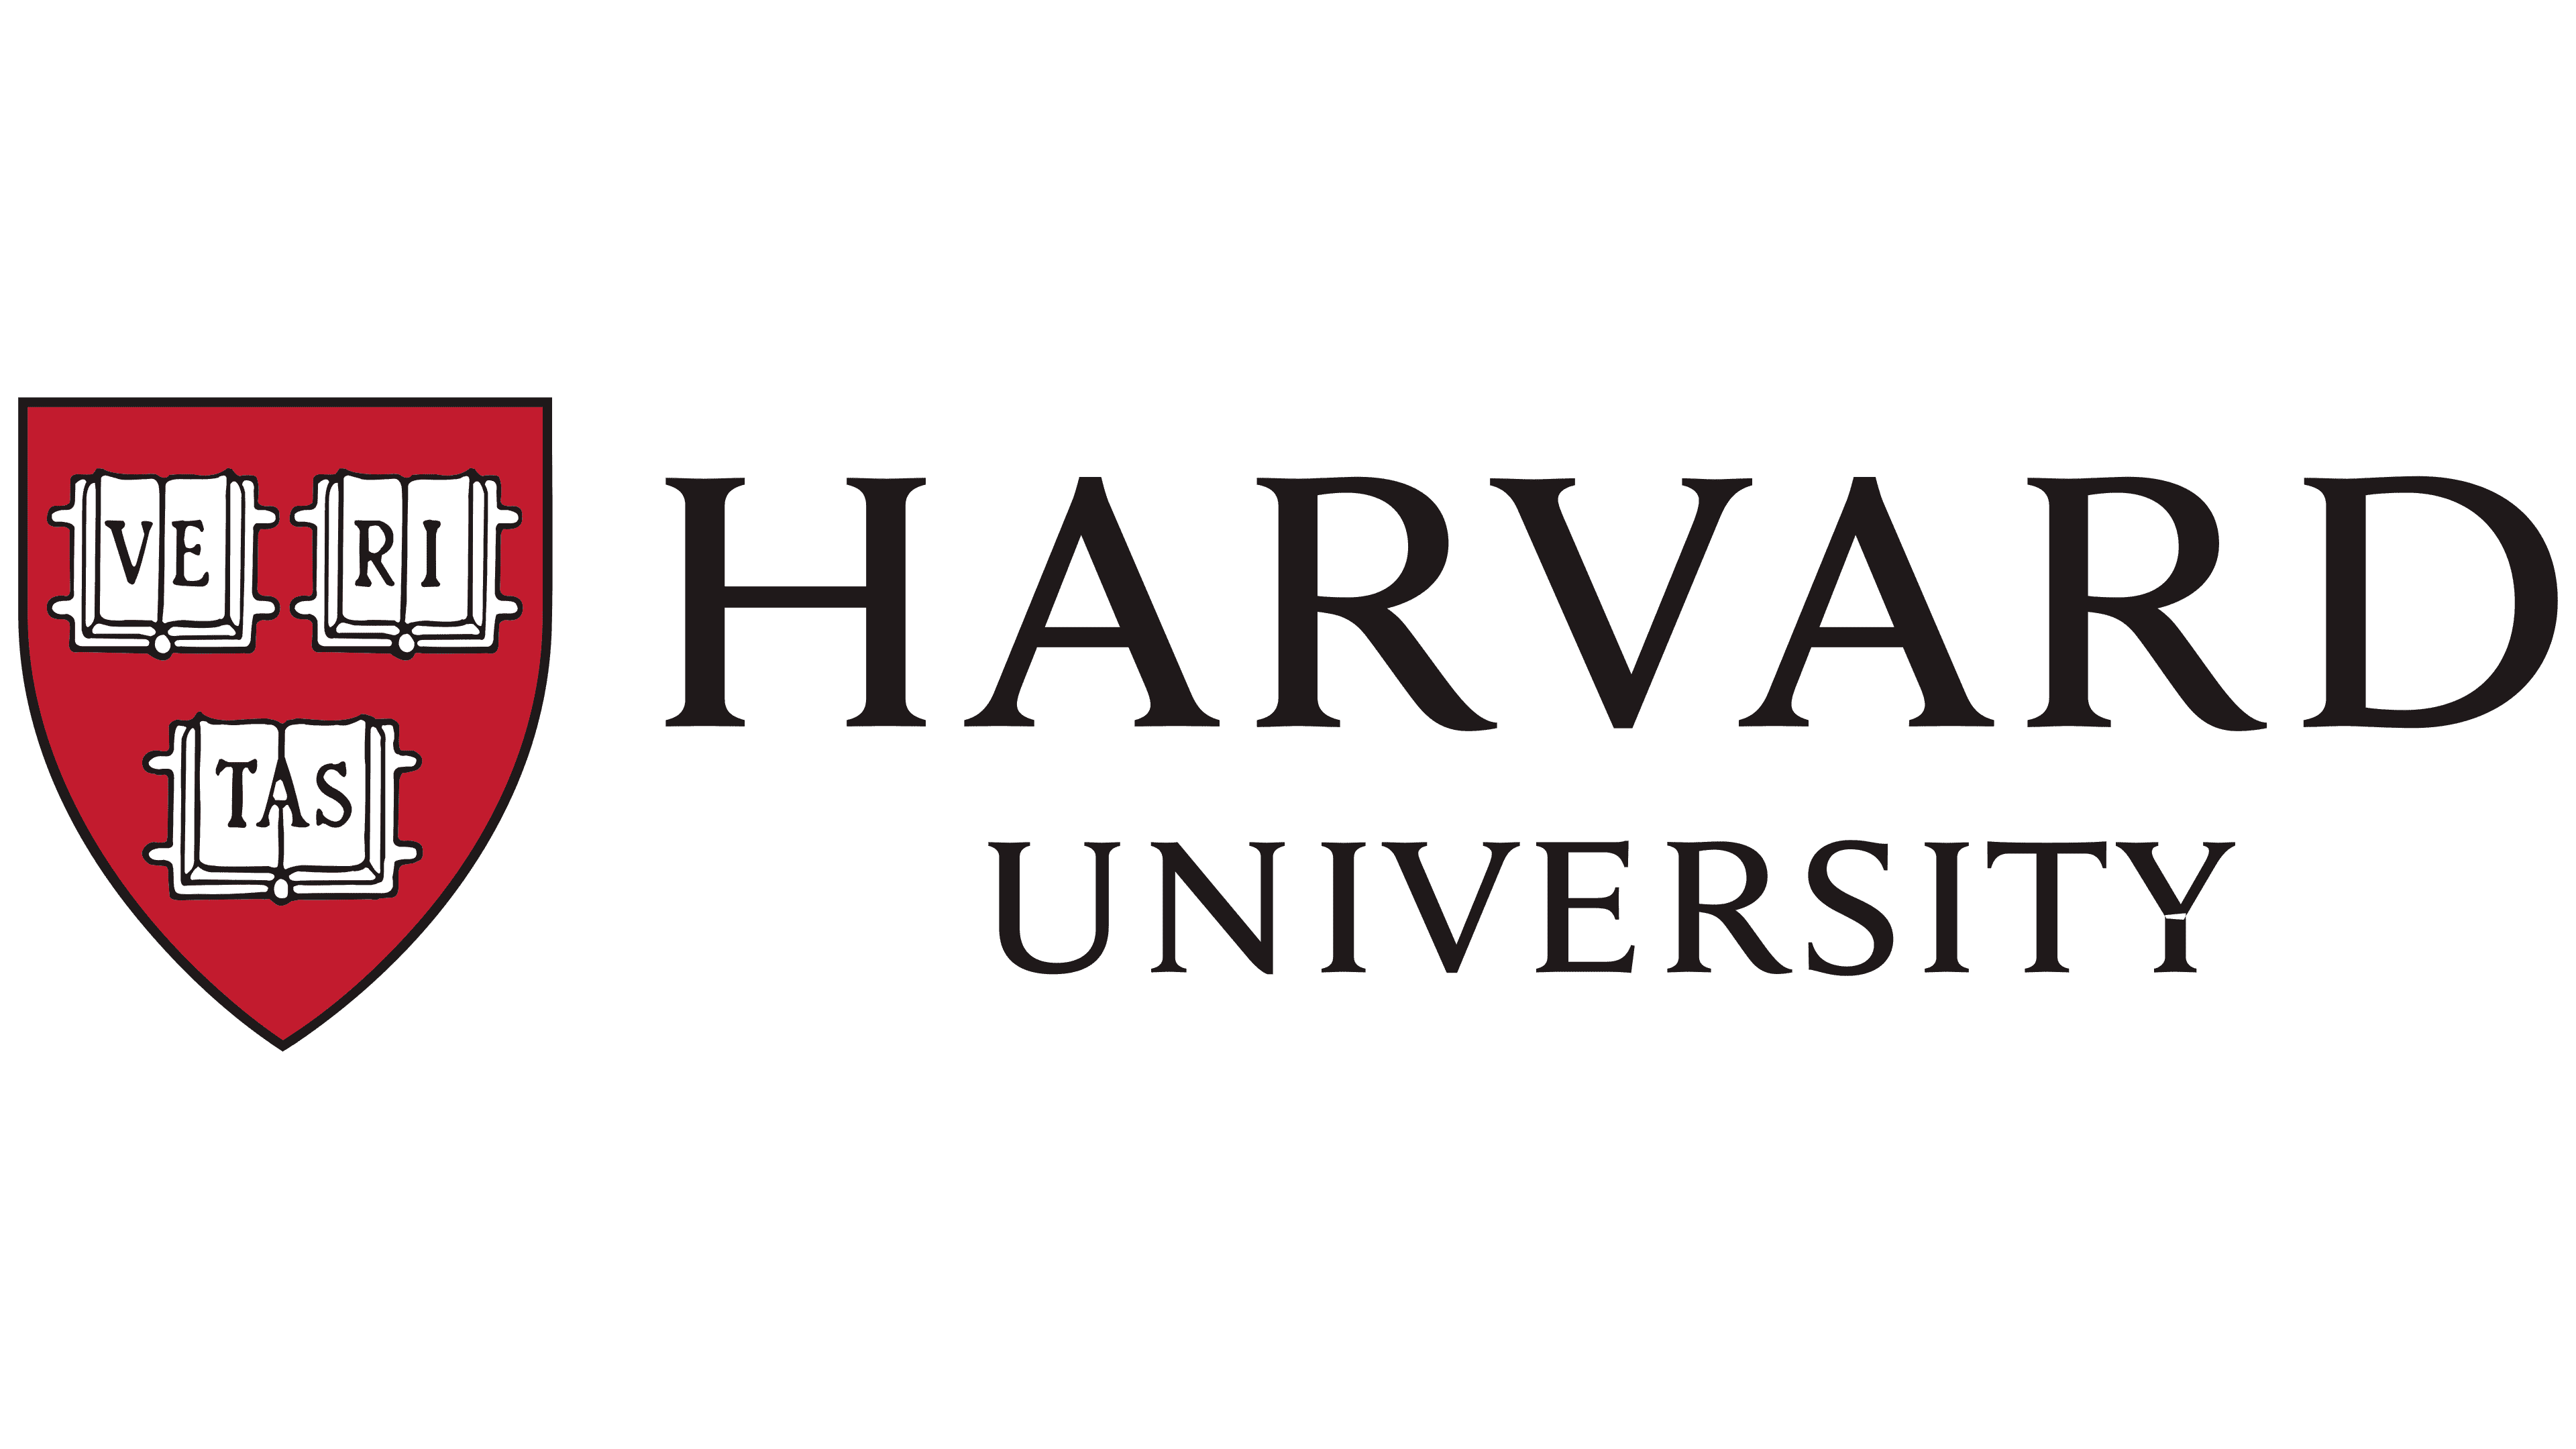 הלוגו והסמל של הרווארד, משמעות, היסטוריה, PNG